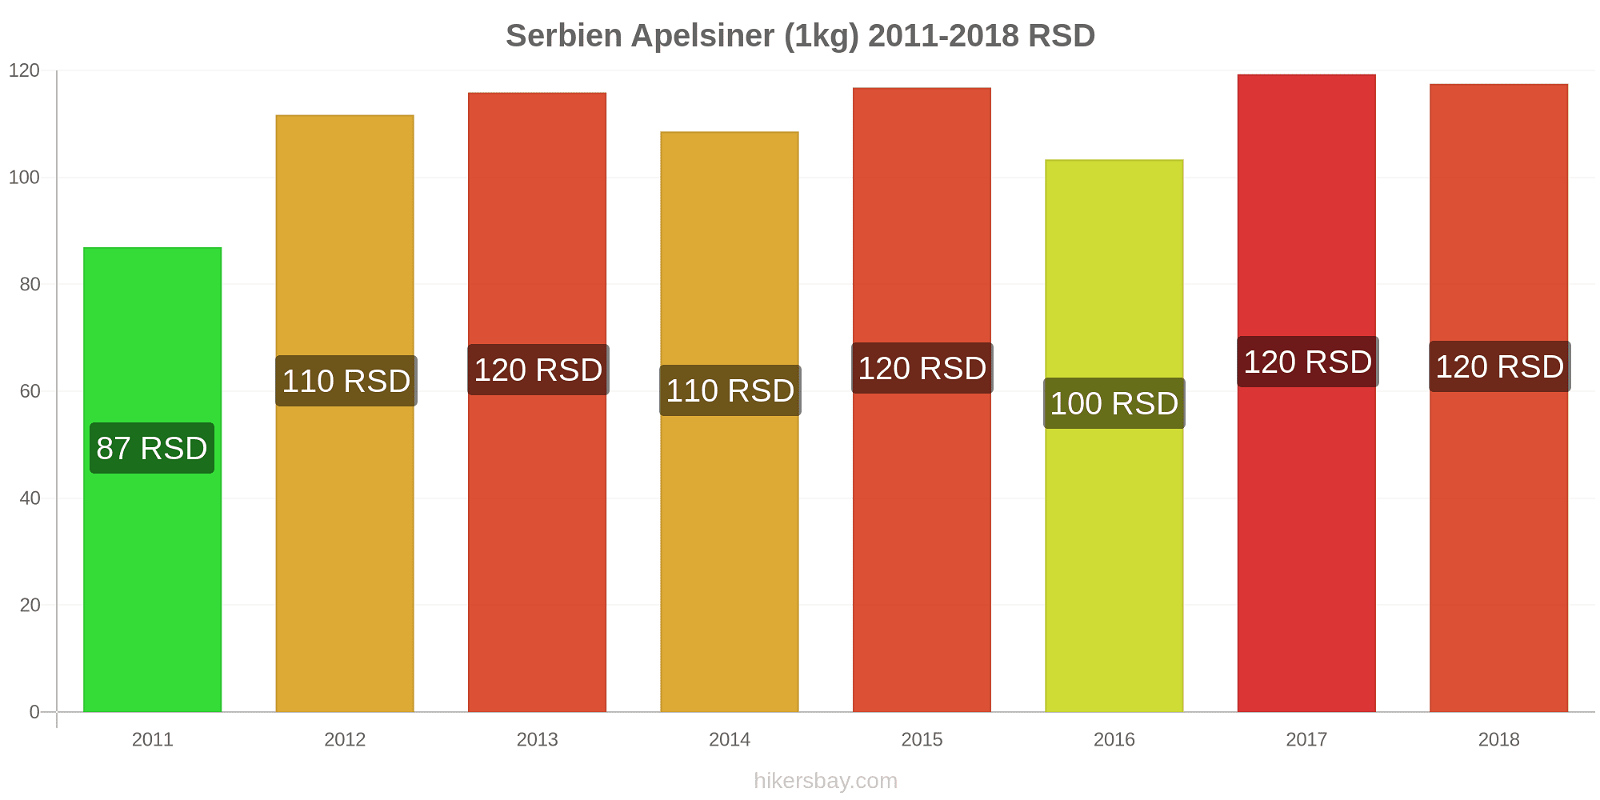 Serbien prisändringar Apelsiner (1kg) hikersbay.com